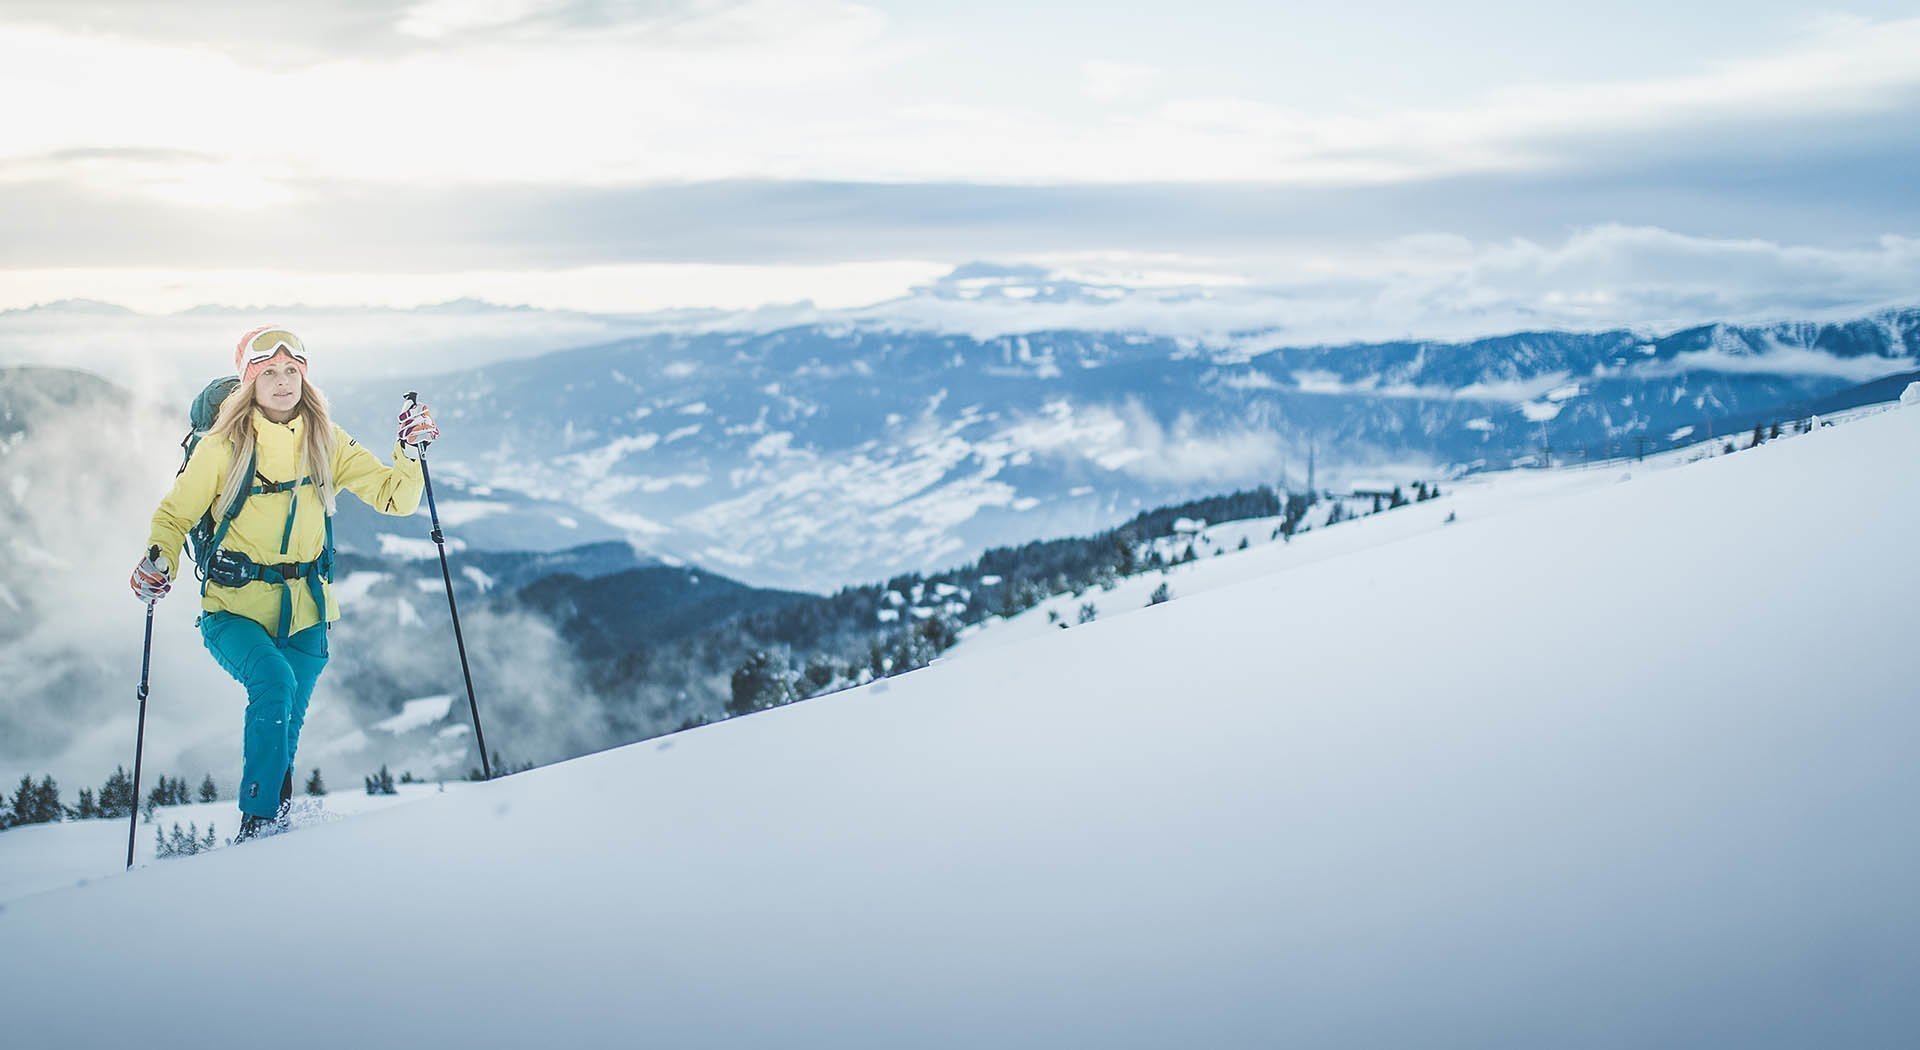 Skifahren, roSkifahren, rodeln und winterwandern in den Dolomiten deln und winterwandern in den Dolomiten